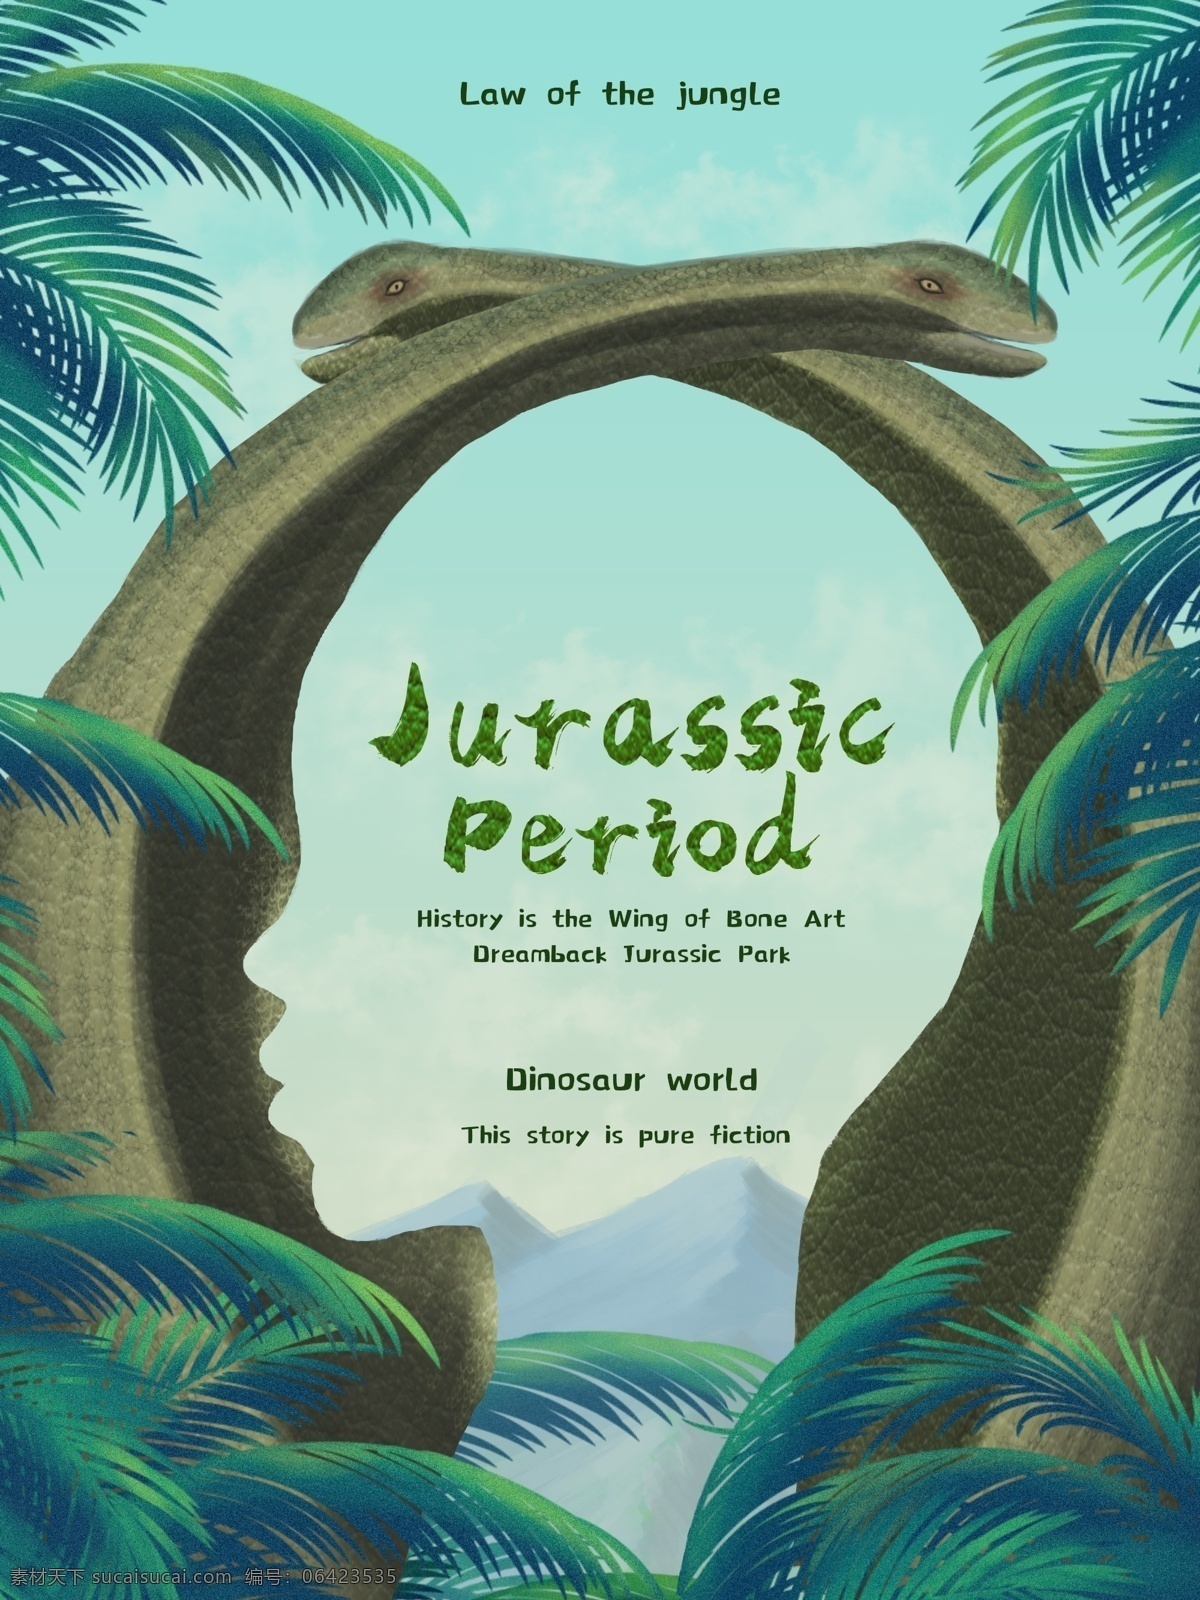 正负 定义 侏罗纪 公园 恐龙 动物世界 插画 海报 正负定义 侏罗纪公园 绿色植物 椰树 人像剪影 创意海报 banner 动物园海报 植物森林海报